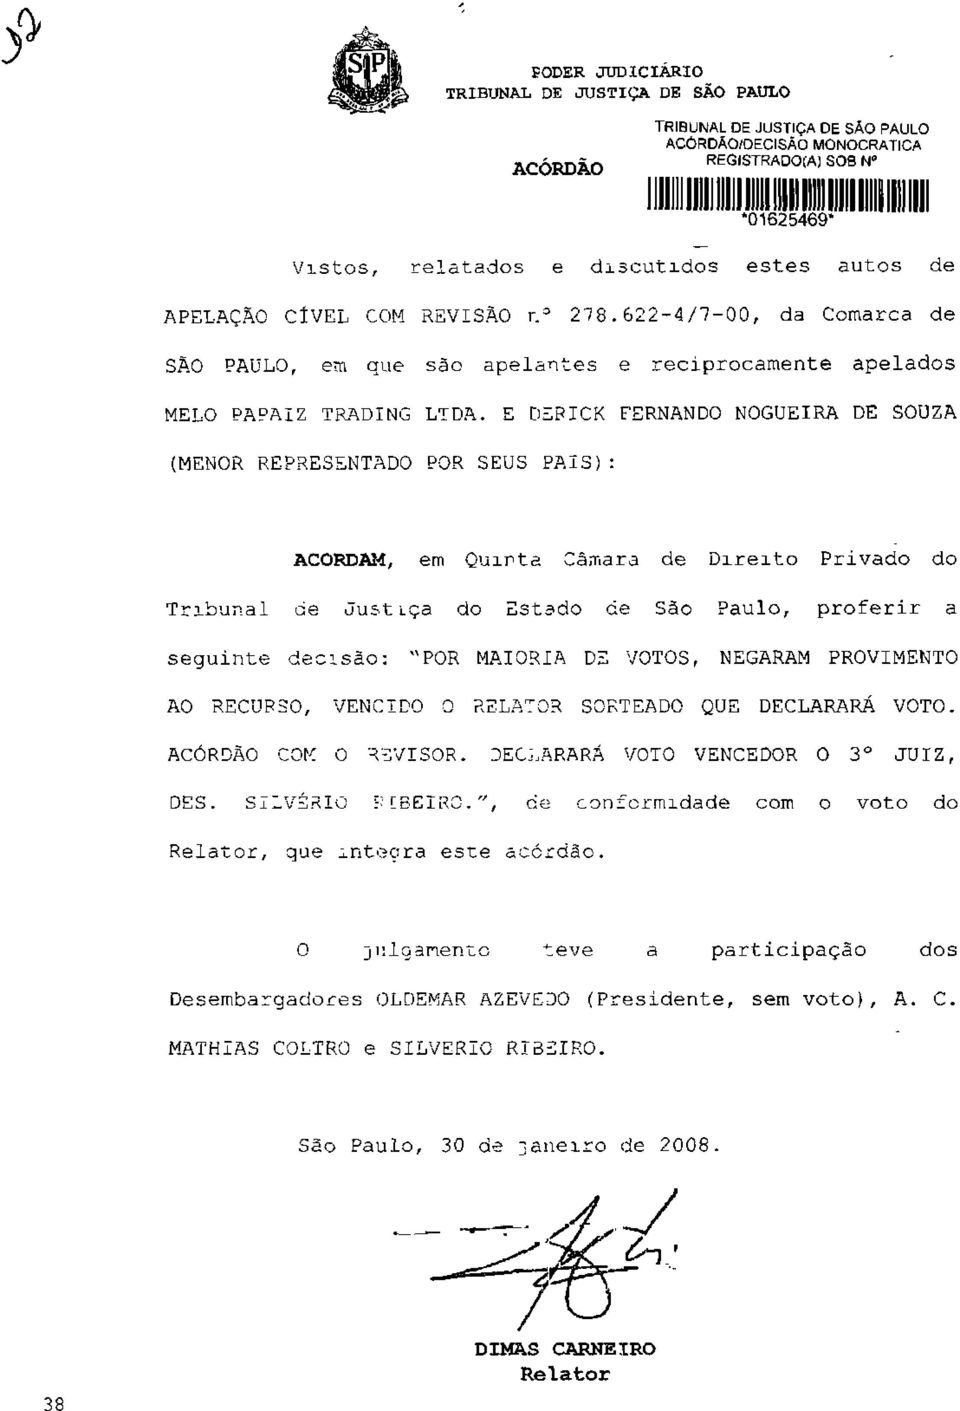 E DEPICK FERNANDO NOGUEIRA DE SOUZA (MENOR REPRESENTADO POR SEUS PAIS): ACORDAM, em Quinta Câmara de Direito Privado do Tribunal de Just iça do Estado de São Paulo, proferir a seguinte decisão: "POR